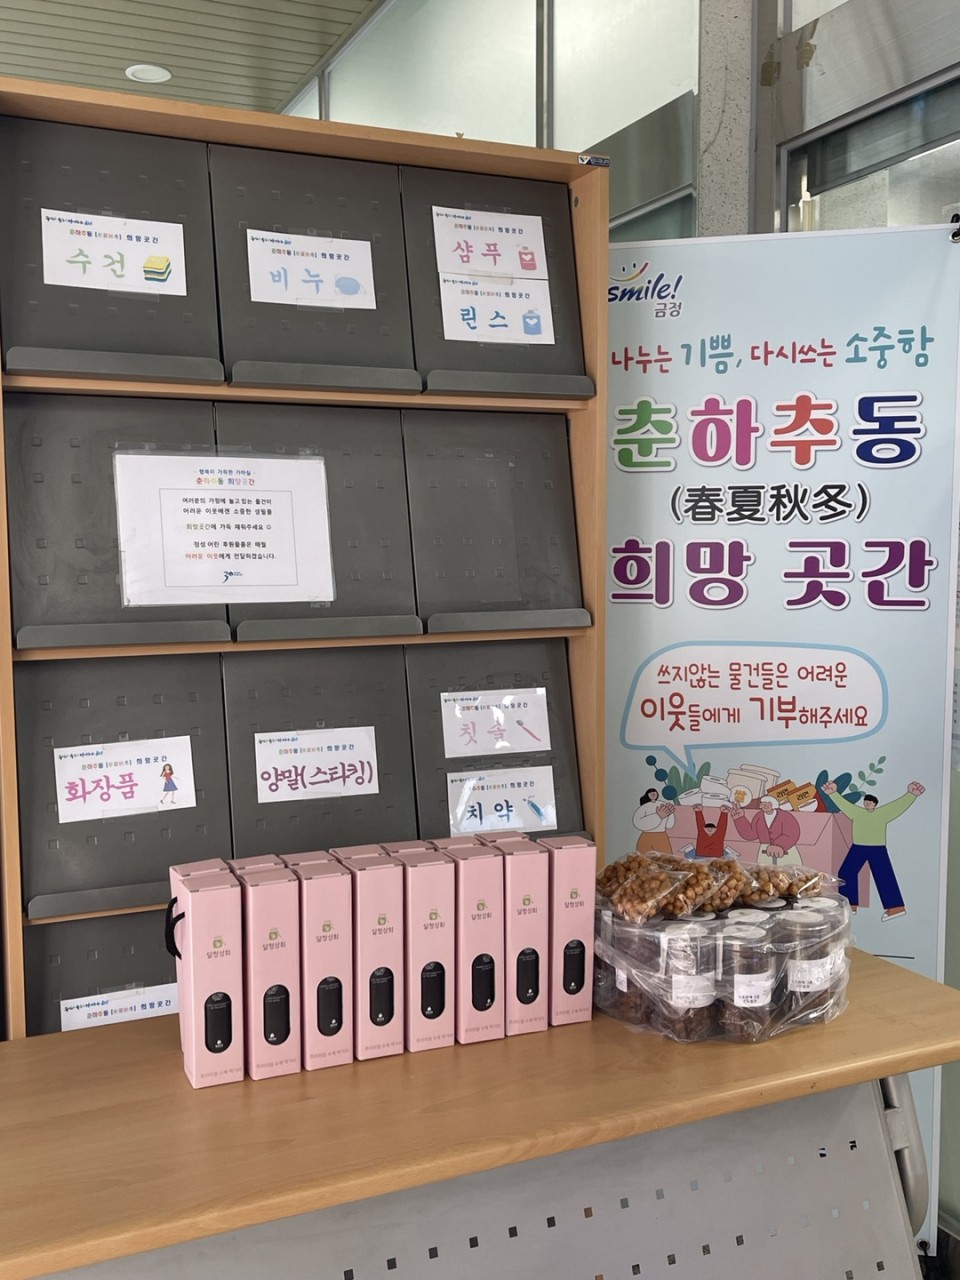 [부곡1동] 춘하추동 희망곳간 식료품 기부(달청상회) 사진1